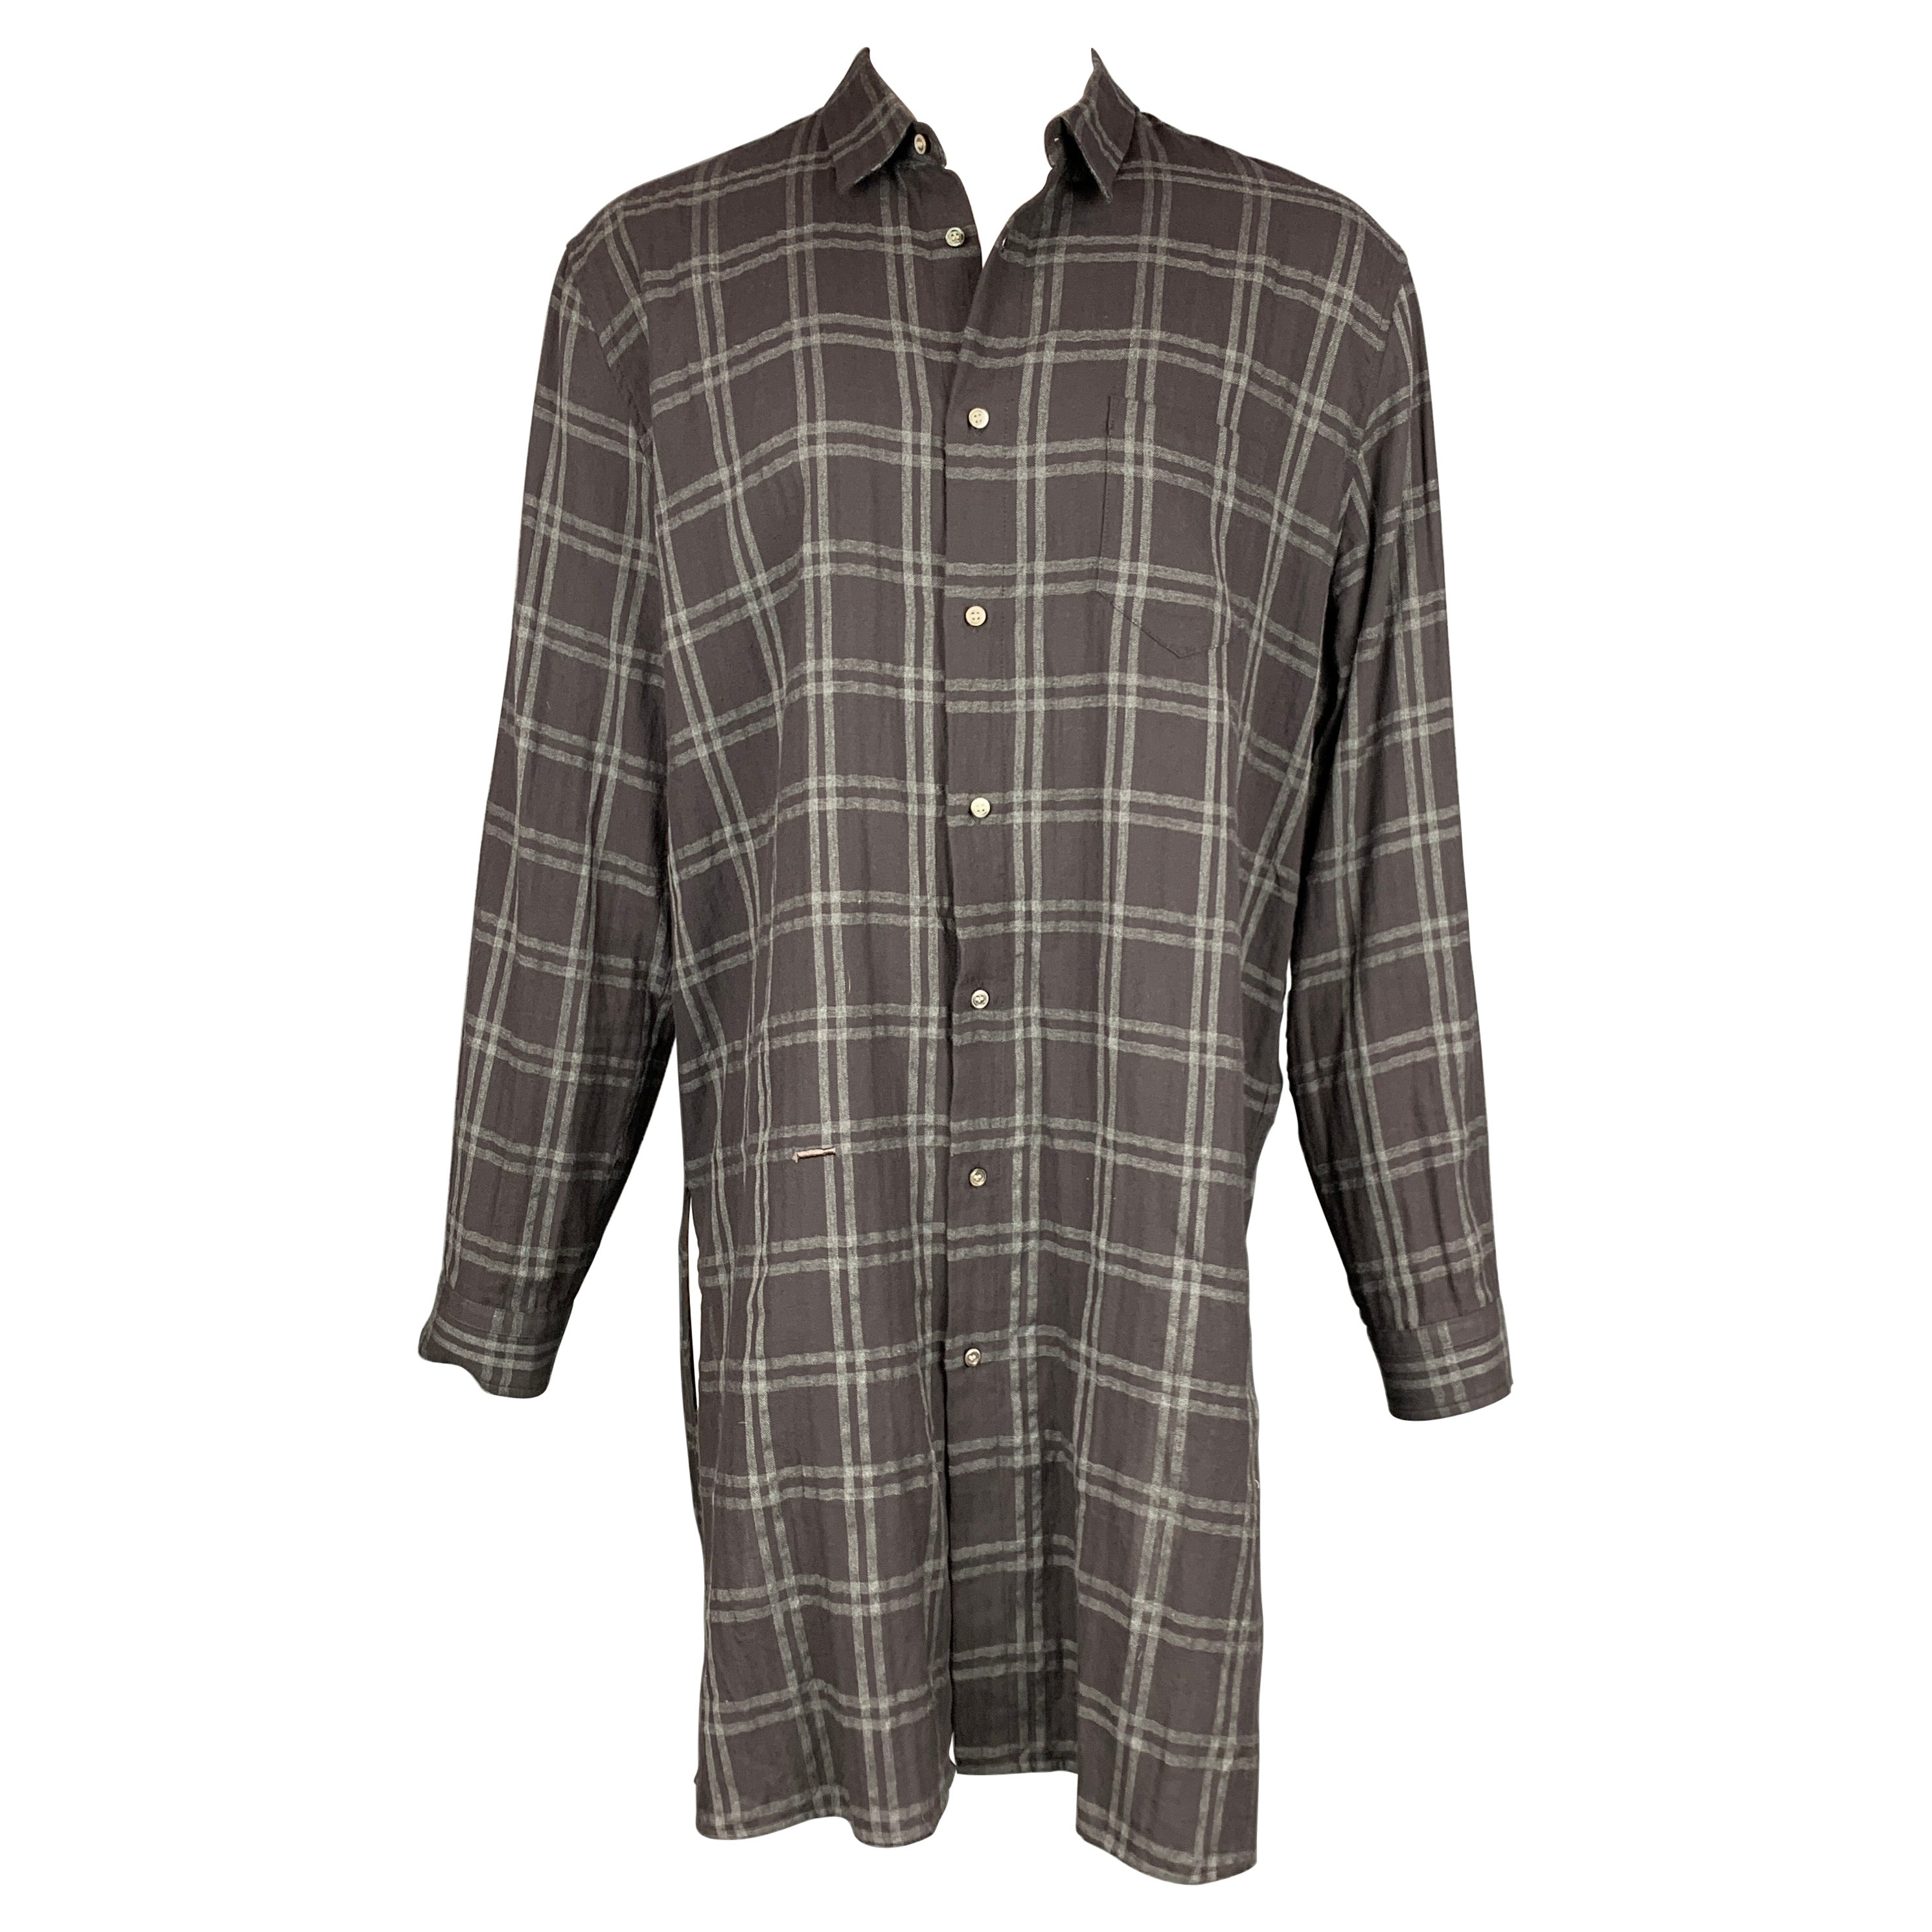 ROBERT GELLER Size L Charcoal & Grey Plaid Cotton Blend Long Sleeve Shirt